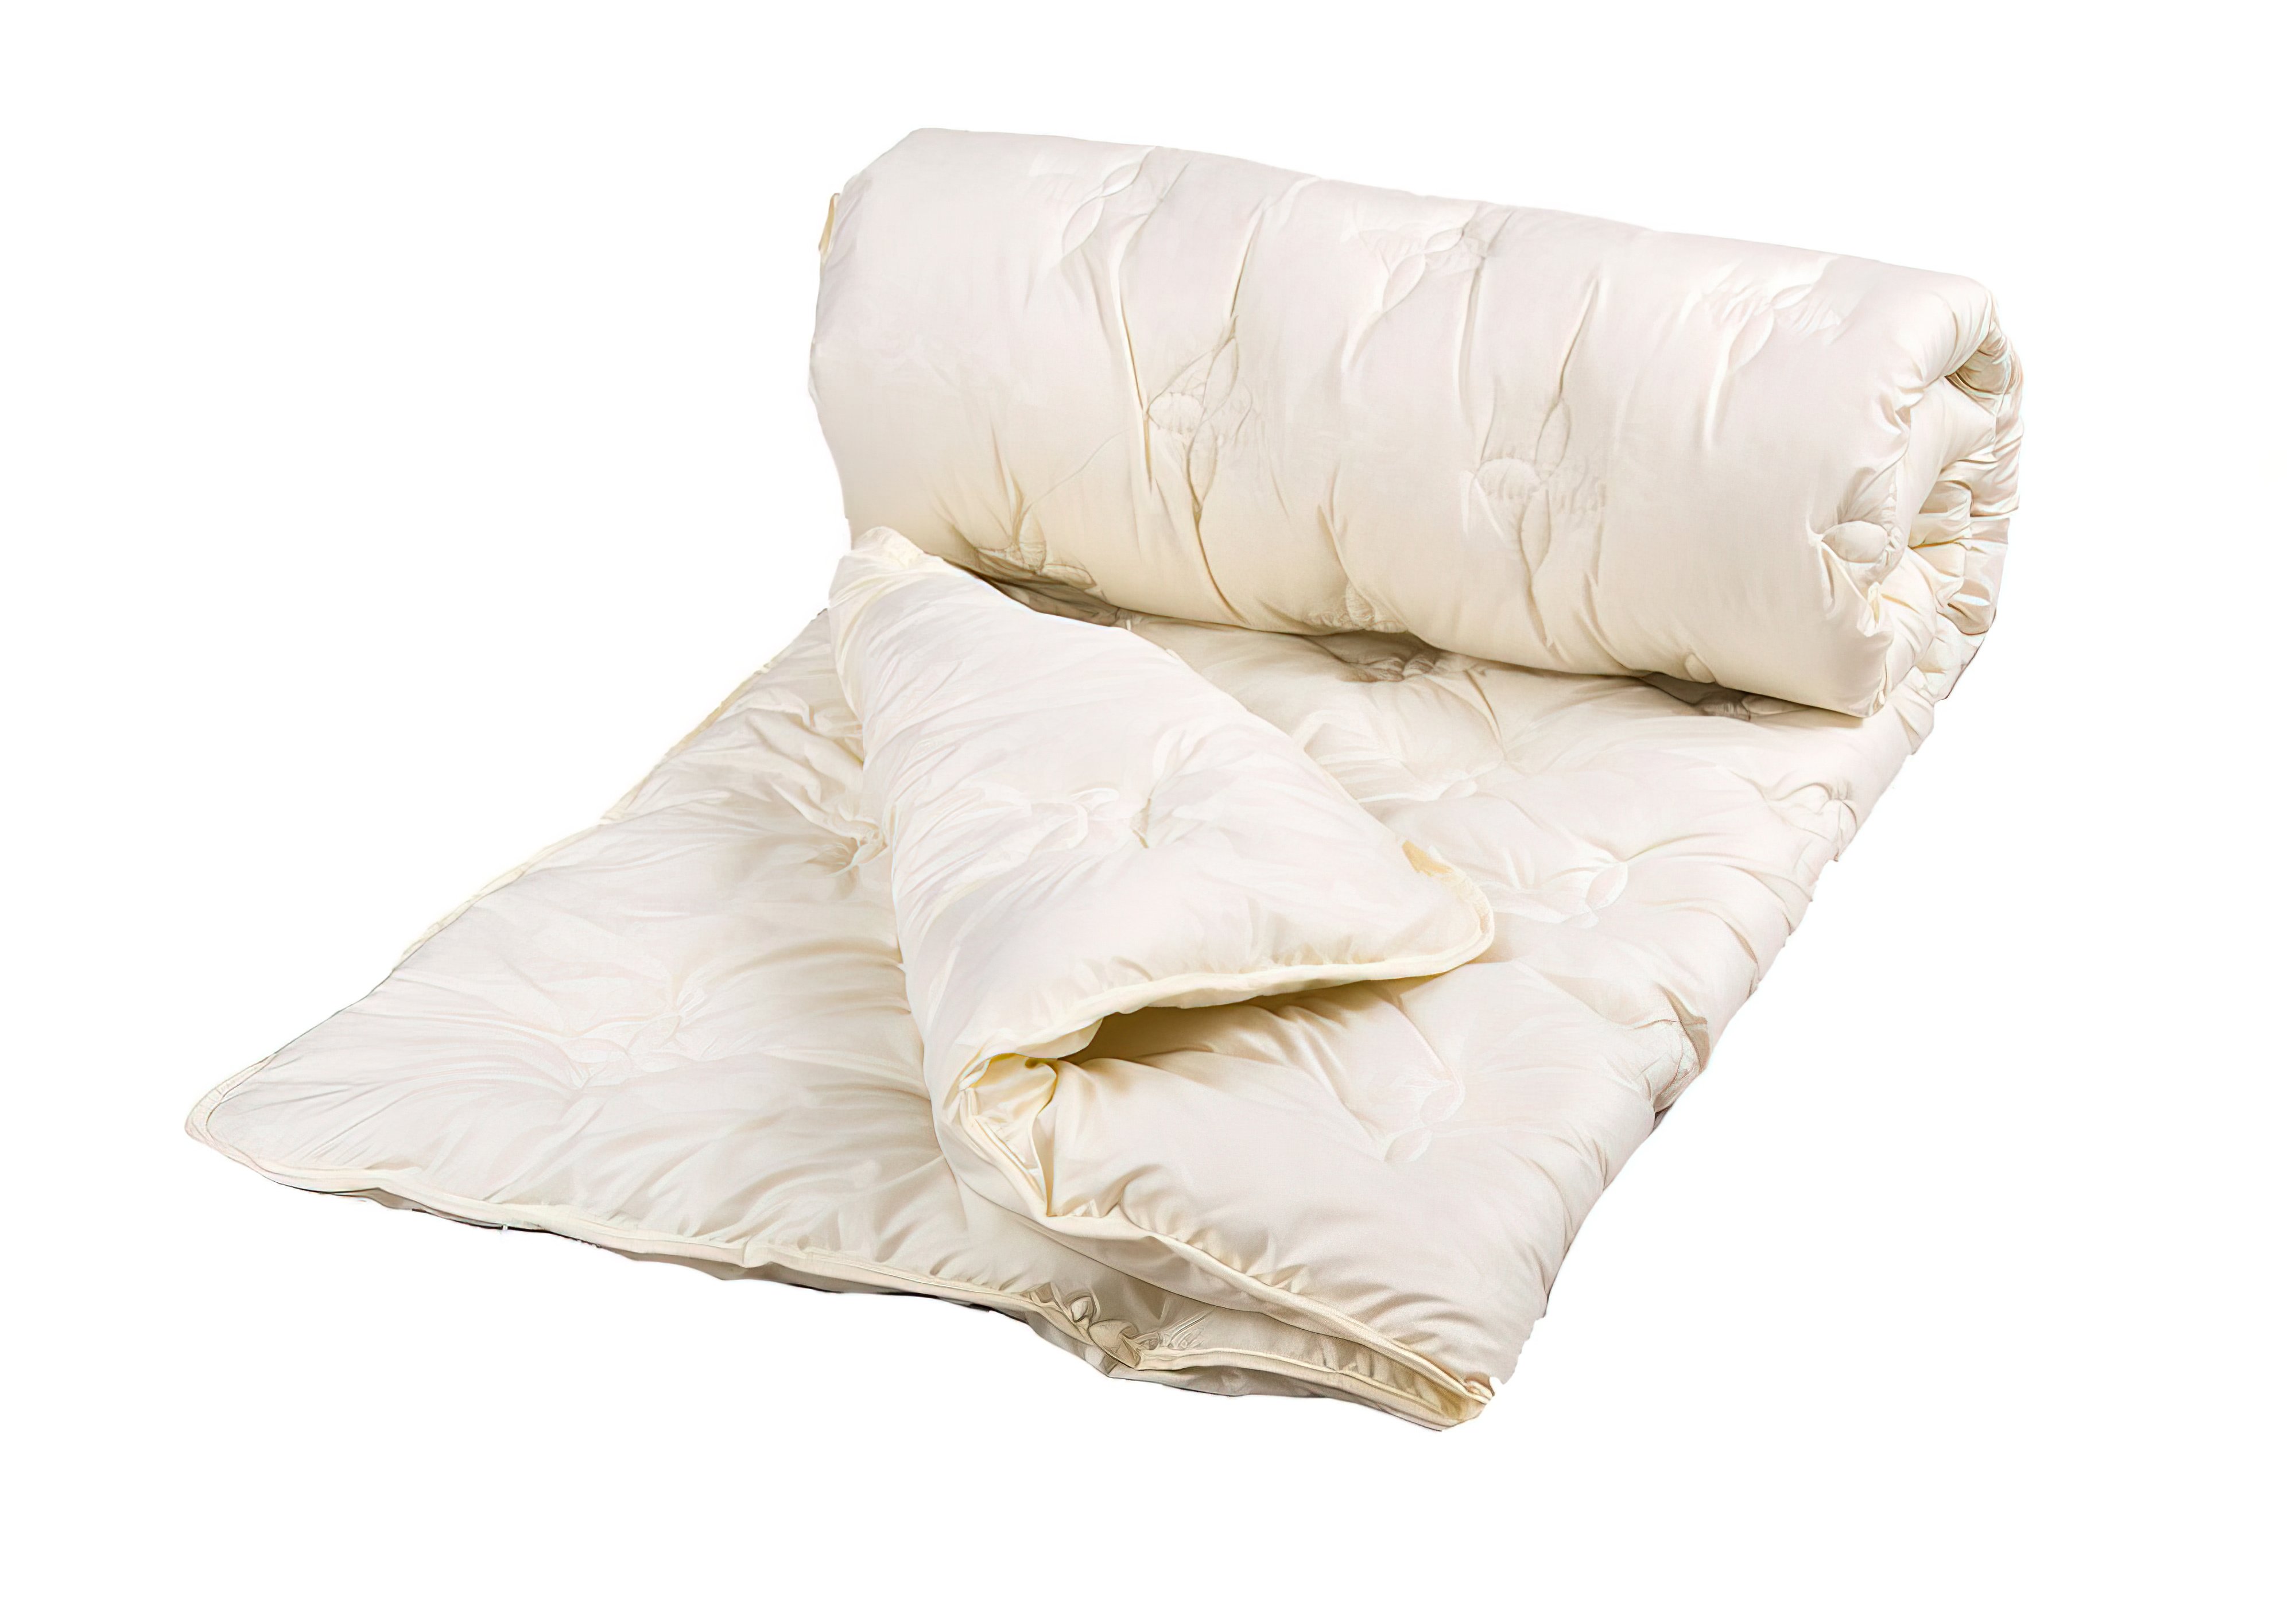 Одеяло Cotton Delicate крем полуторное Lotus, Количество спальных мест Полуторное